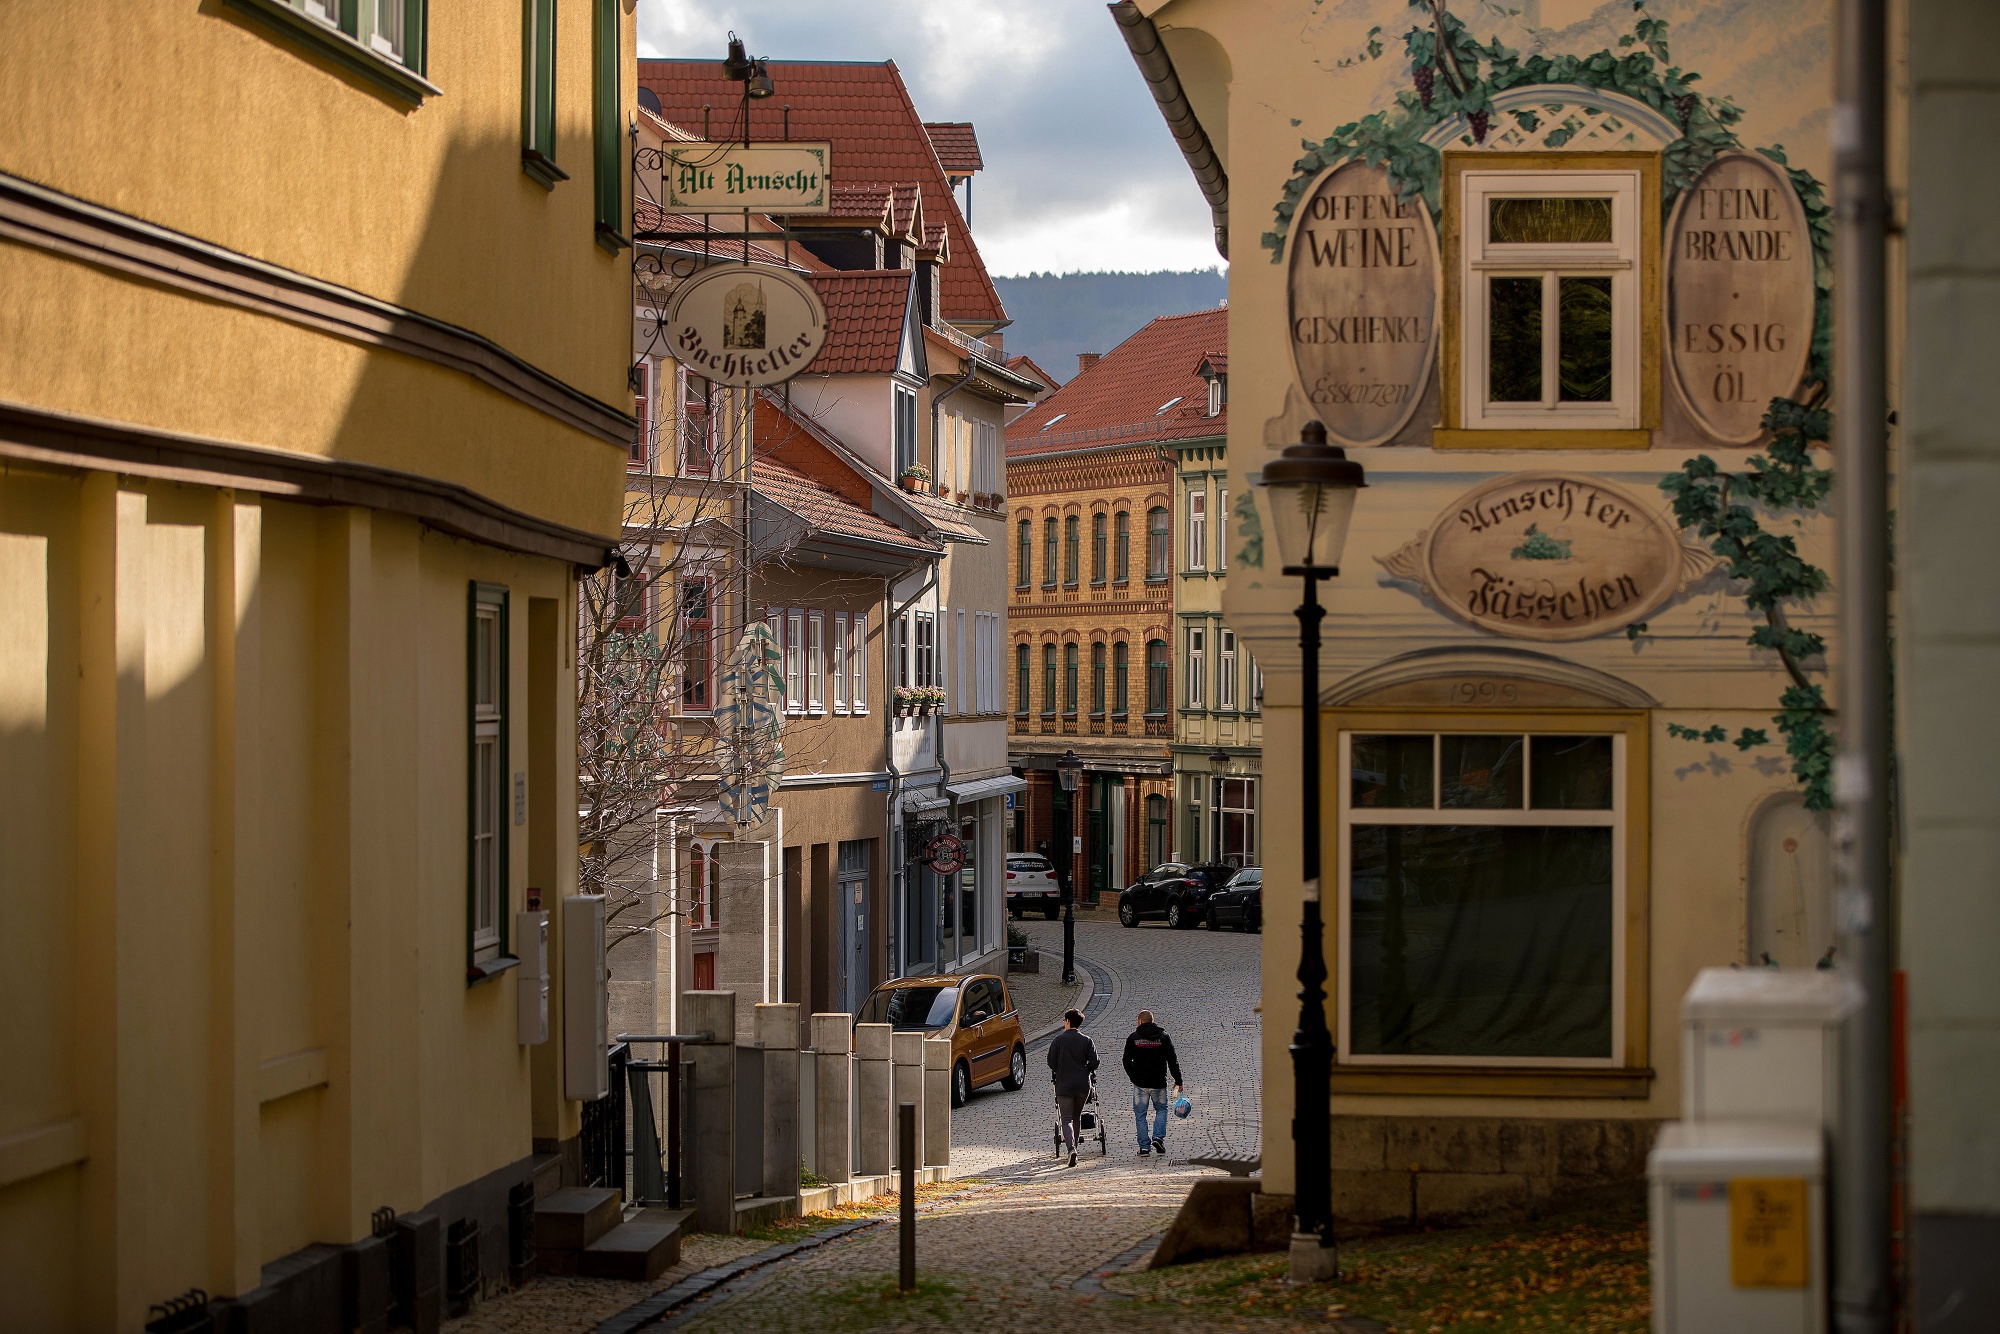 Pedestrians walk along a cobbled street near restaurants in Arnstadt.